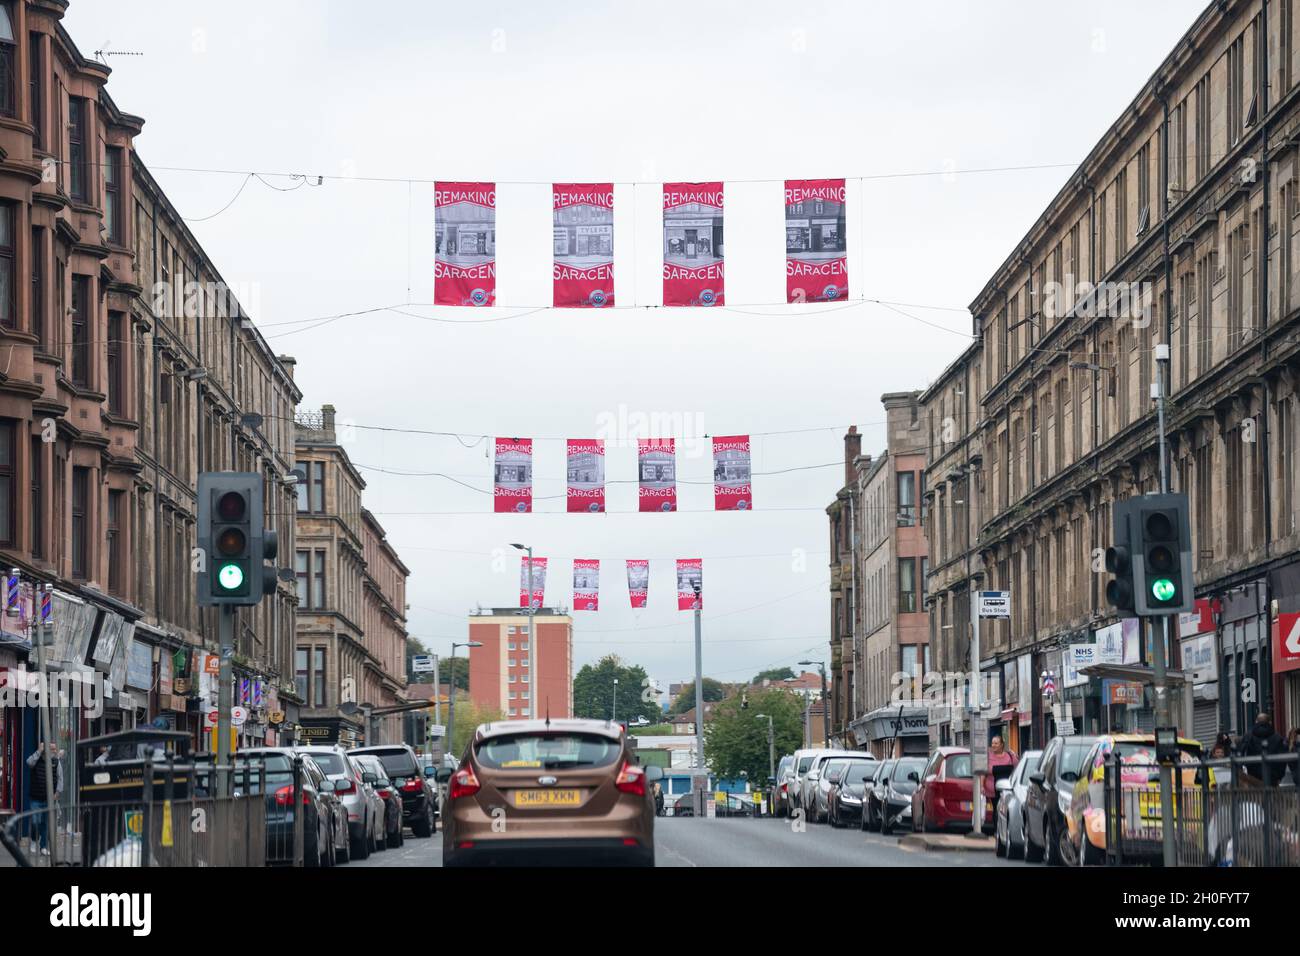 Saracen Street, Possilpark, Glasgow, Escocia, Reino Unido con el logotipo Remaking Saracen banners creado por el diseñador Maeve Redmond para POSSILPARK BID Foto de stock